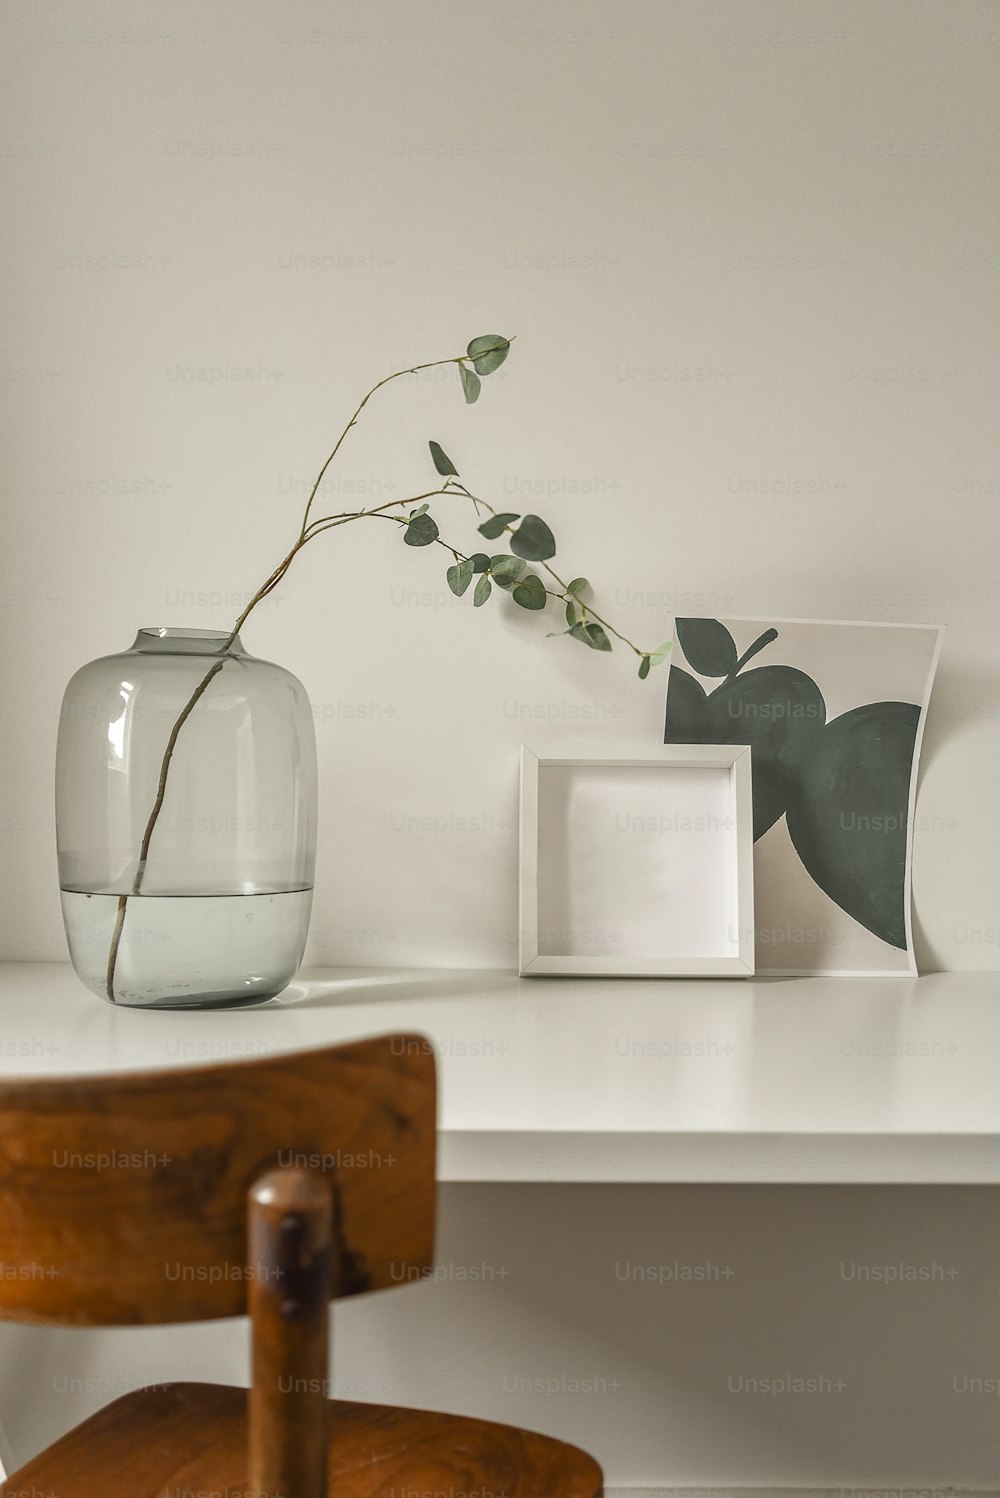 Einfacher minimalistischer Schreibtisch mit dekorativer Pflanze in einem Glasgefäß. Kleiner Arbeitsplatz in einem modernen Haus